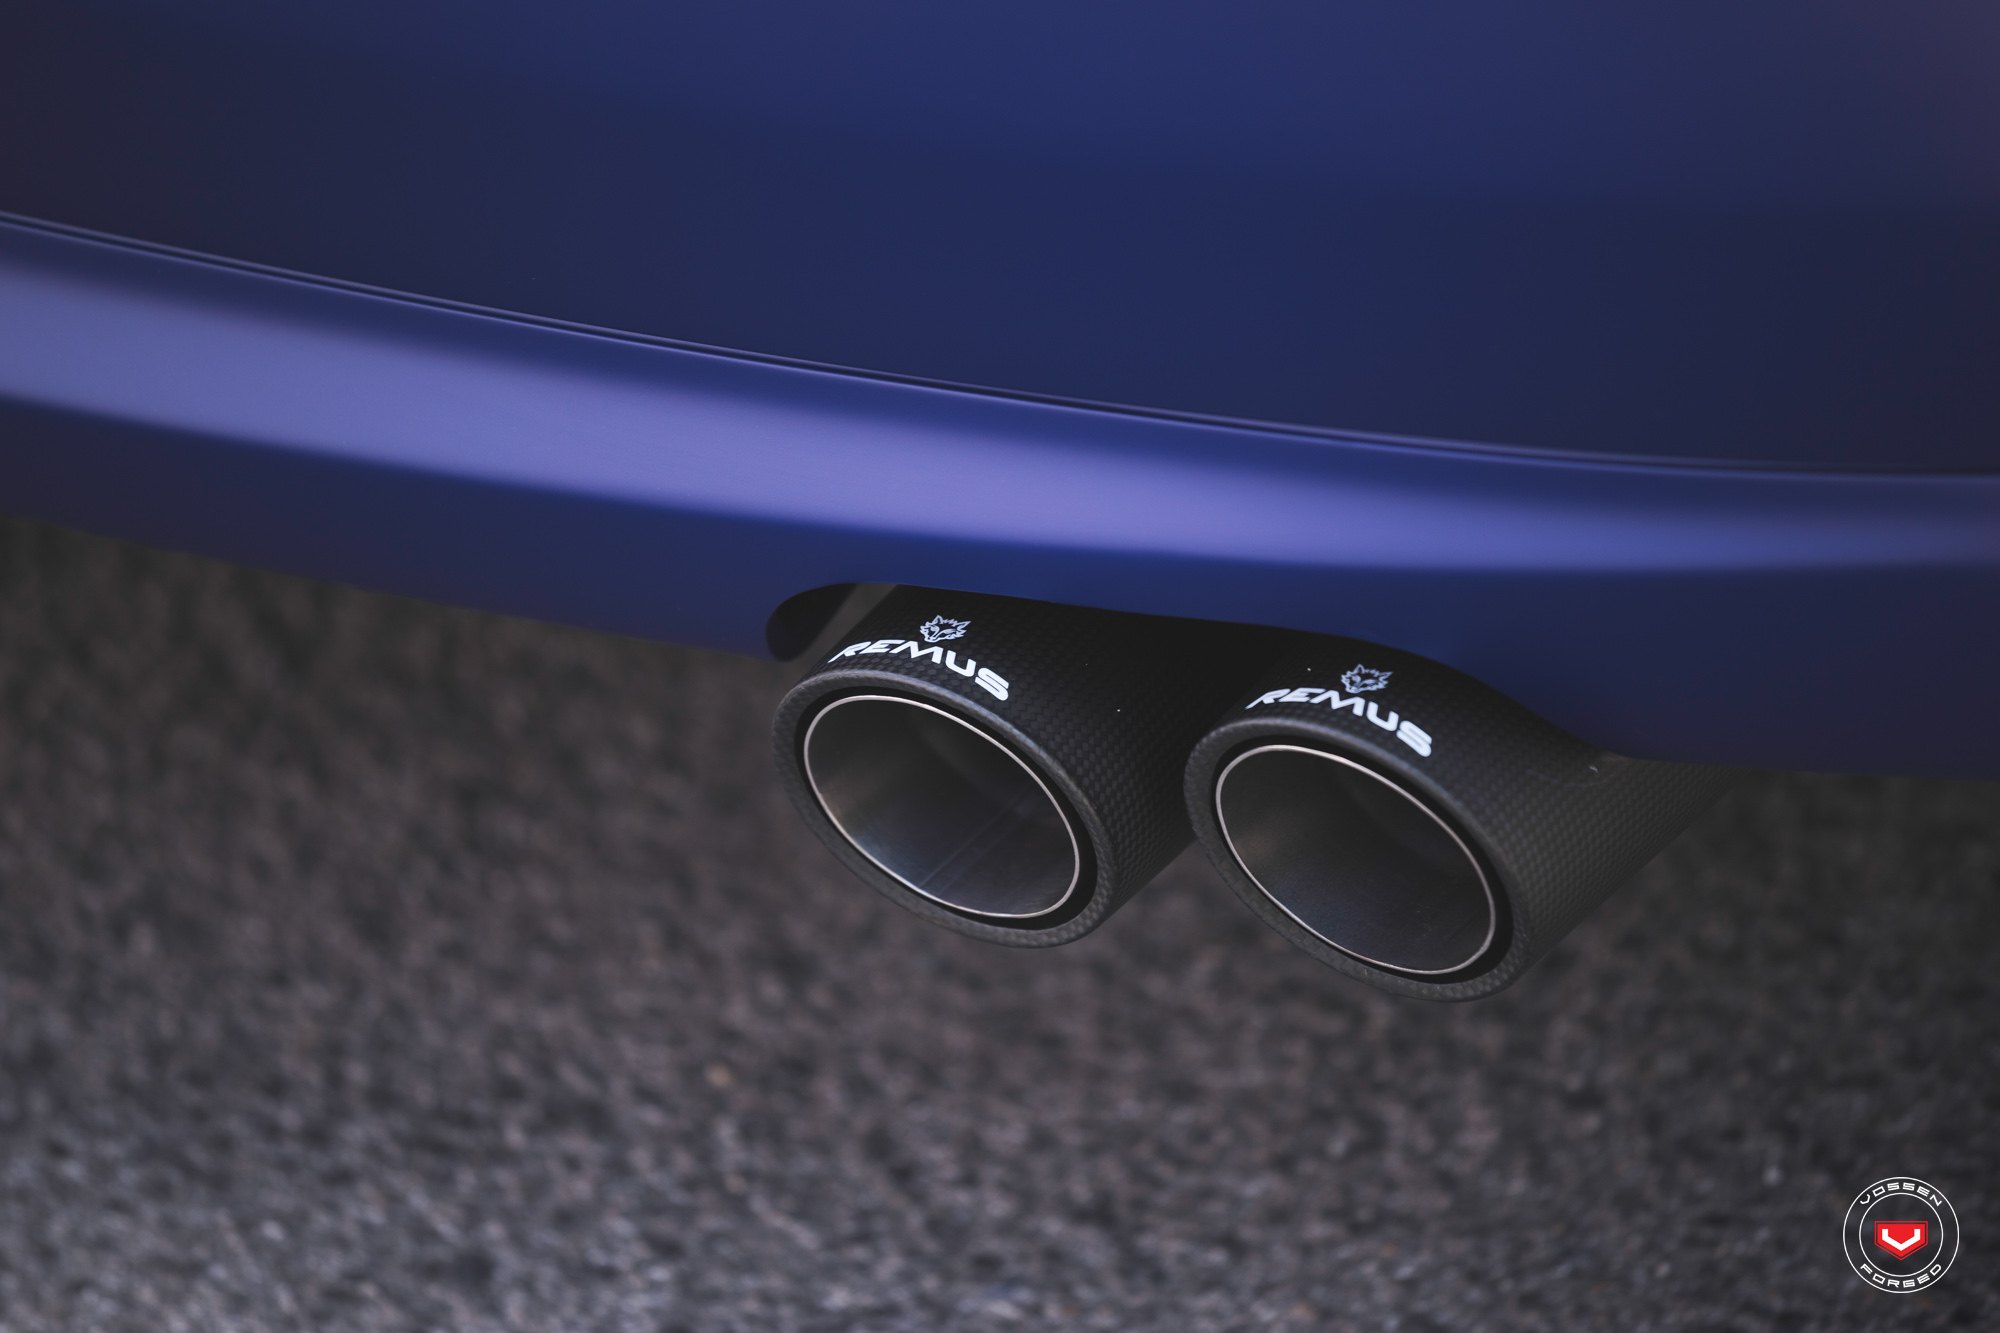 Remus Exhaust System on Matte Blue VW Jetta - Photo by Vossen